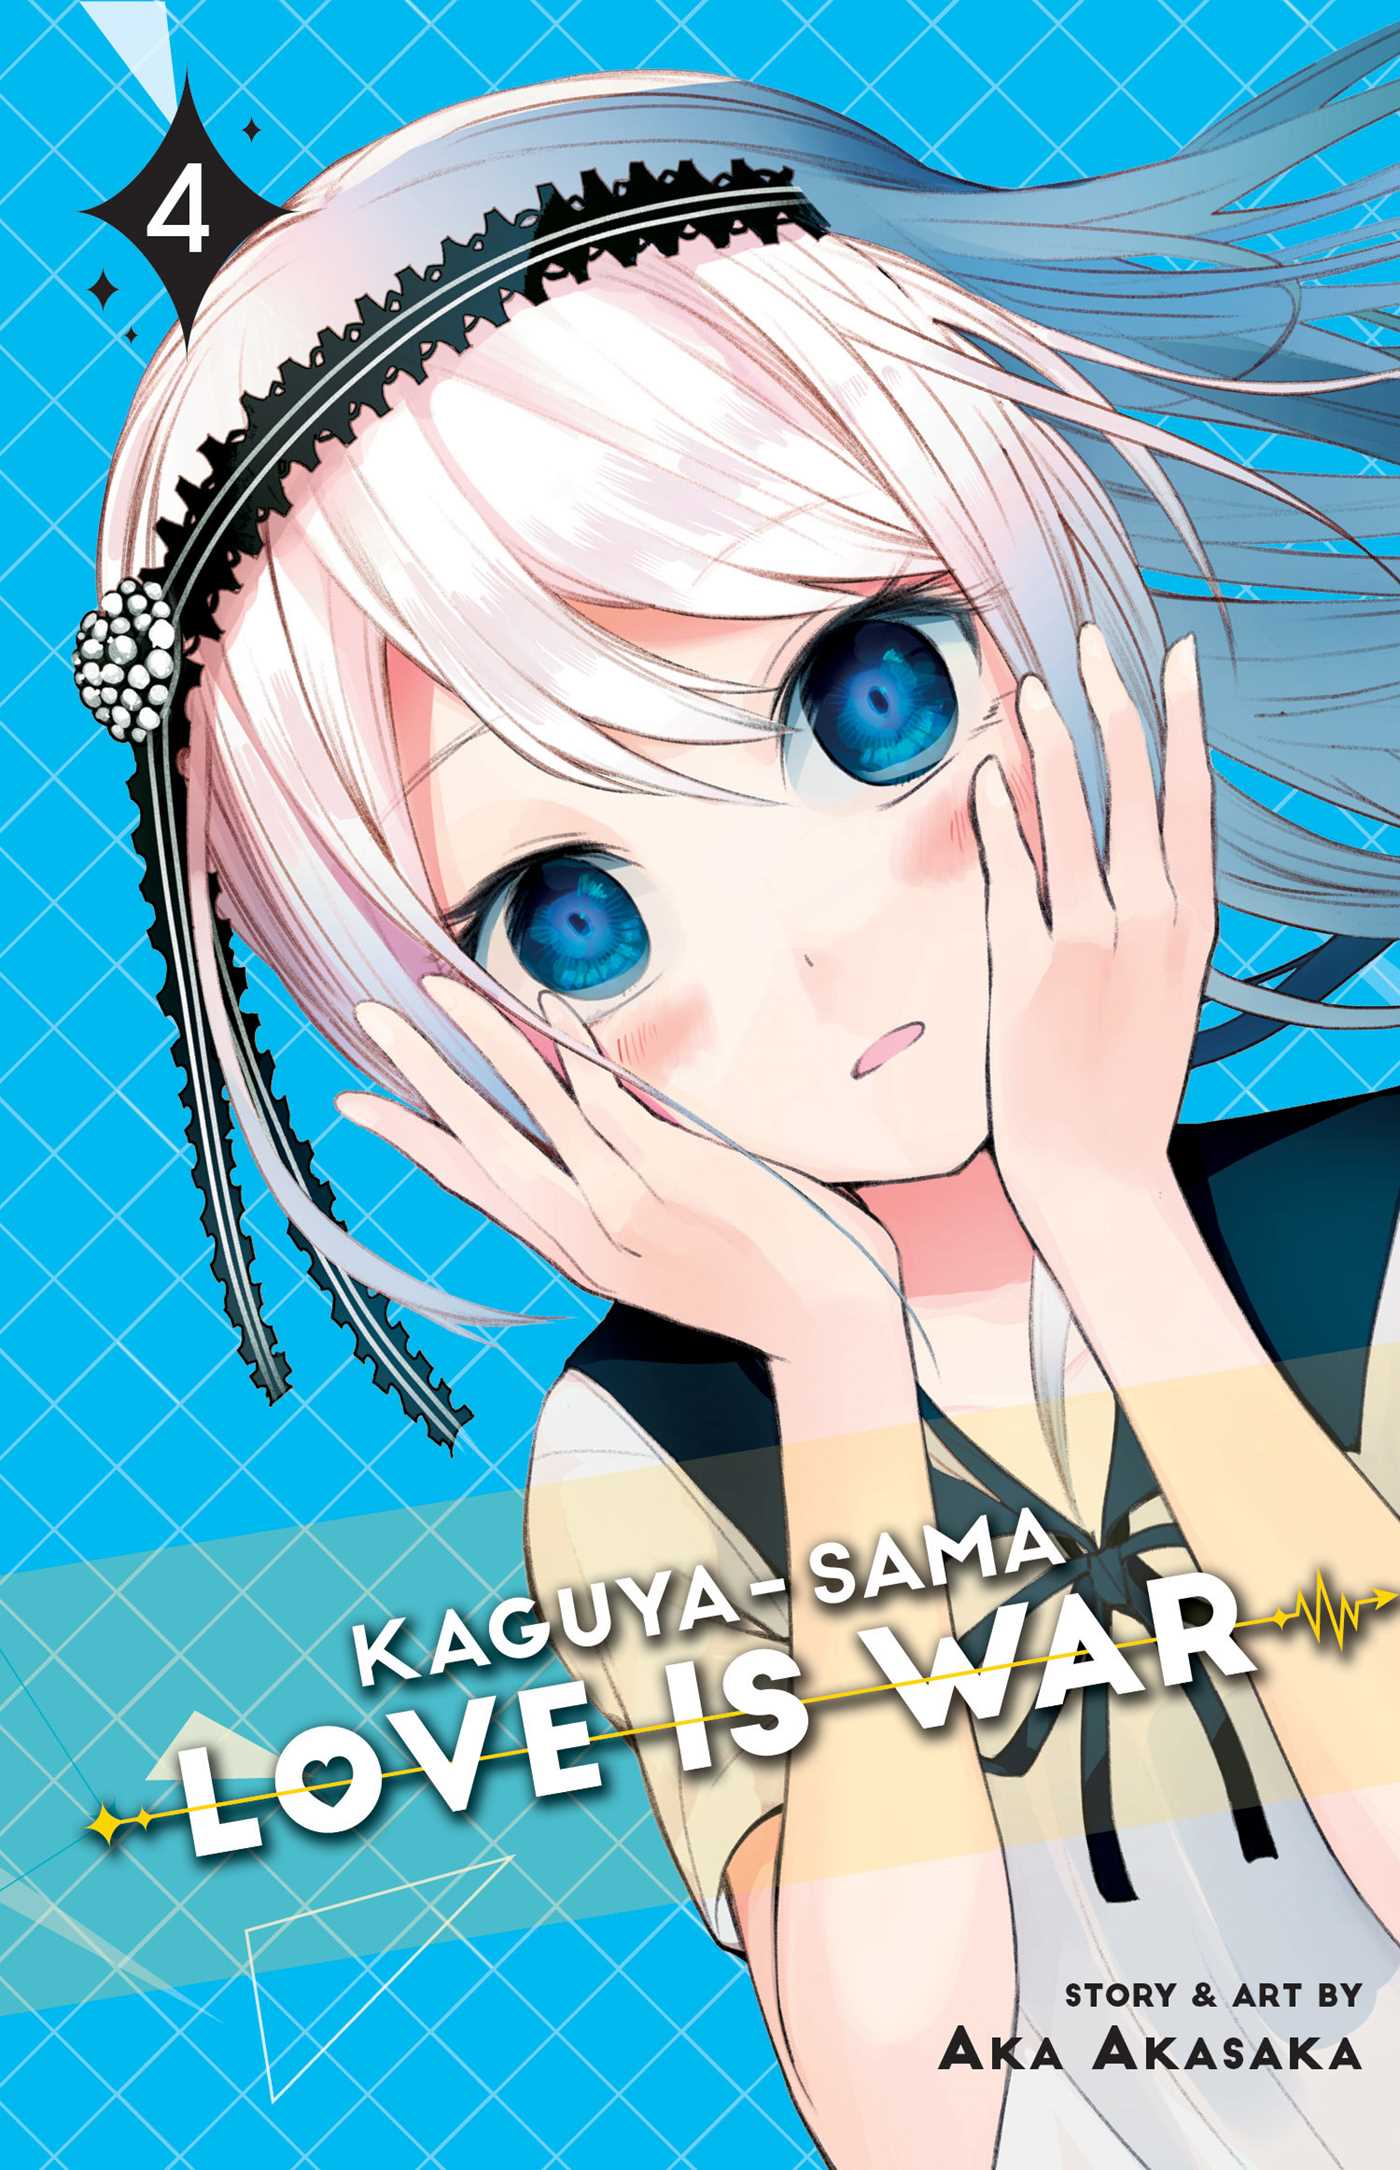 Kaguya Sama: Love Is War, Vol. 4. Book By Aka Akasaka. Official